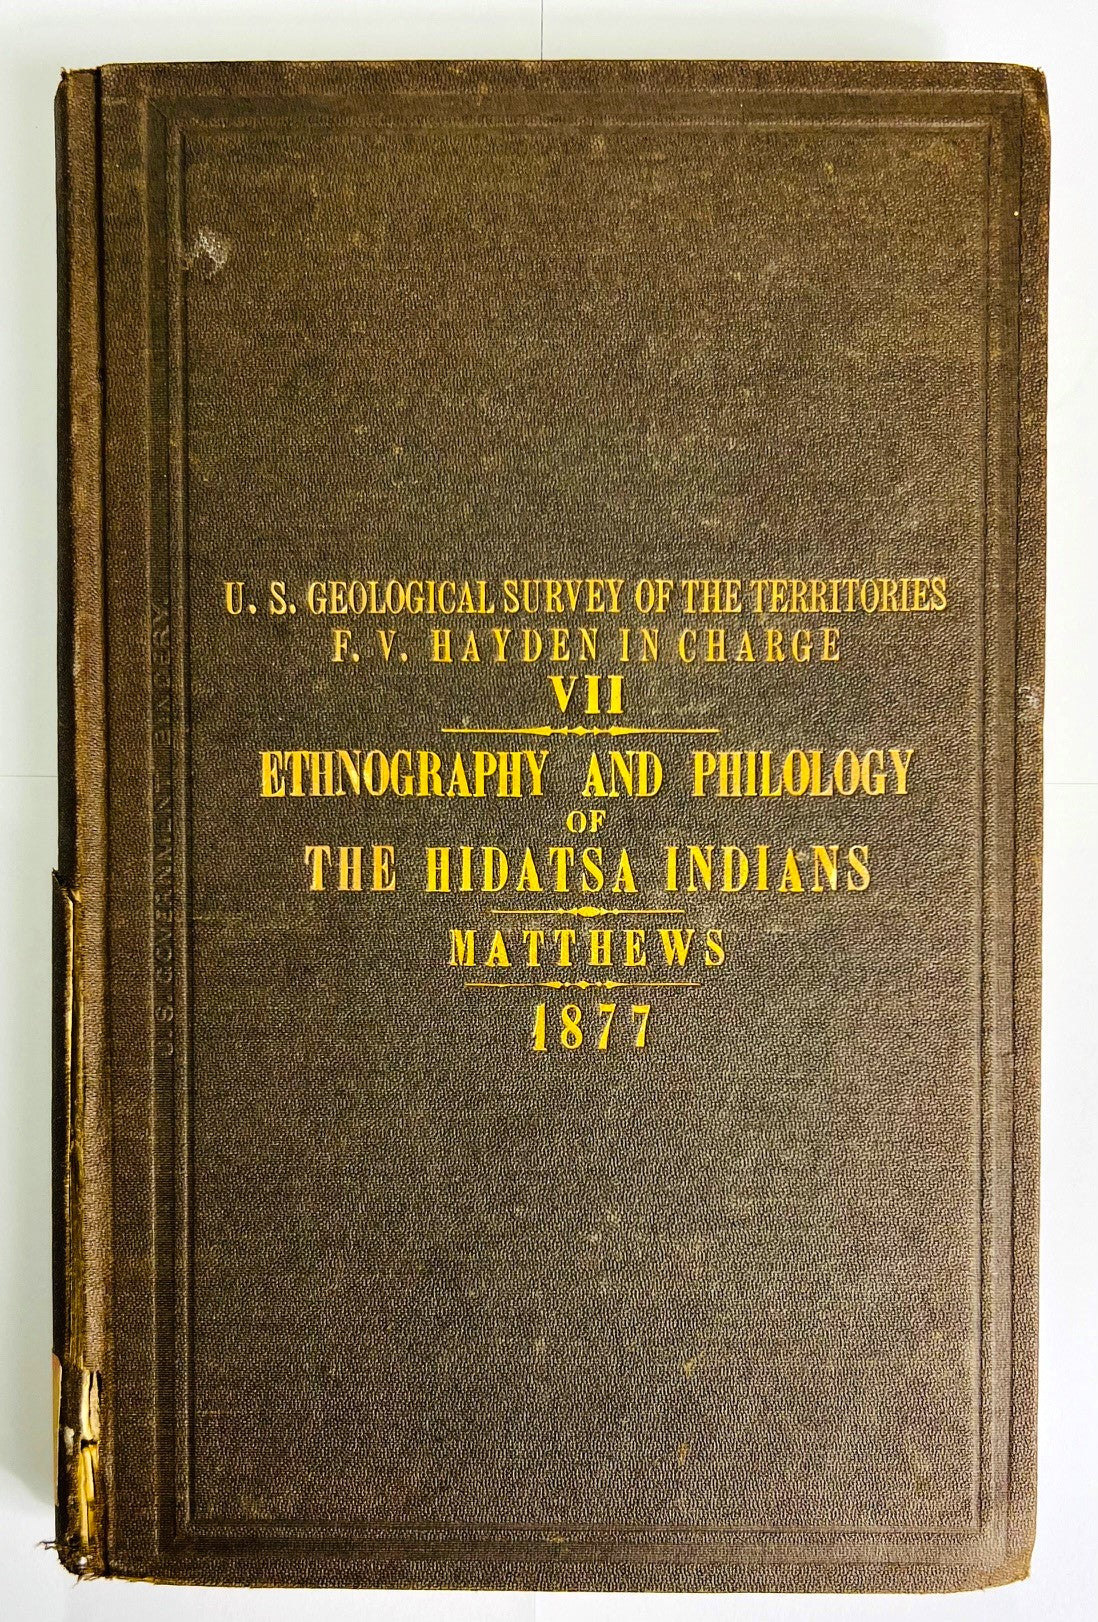 MATTHEWS, Washington. Ethnography and Philology of the Hidatsa Indians.